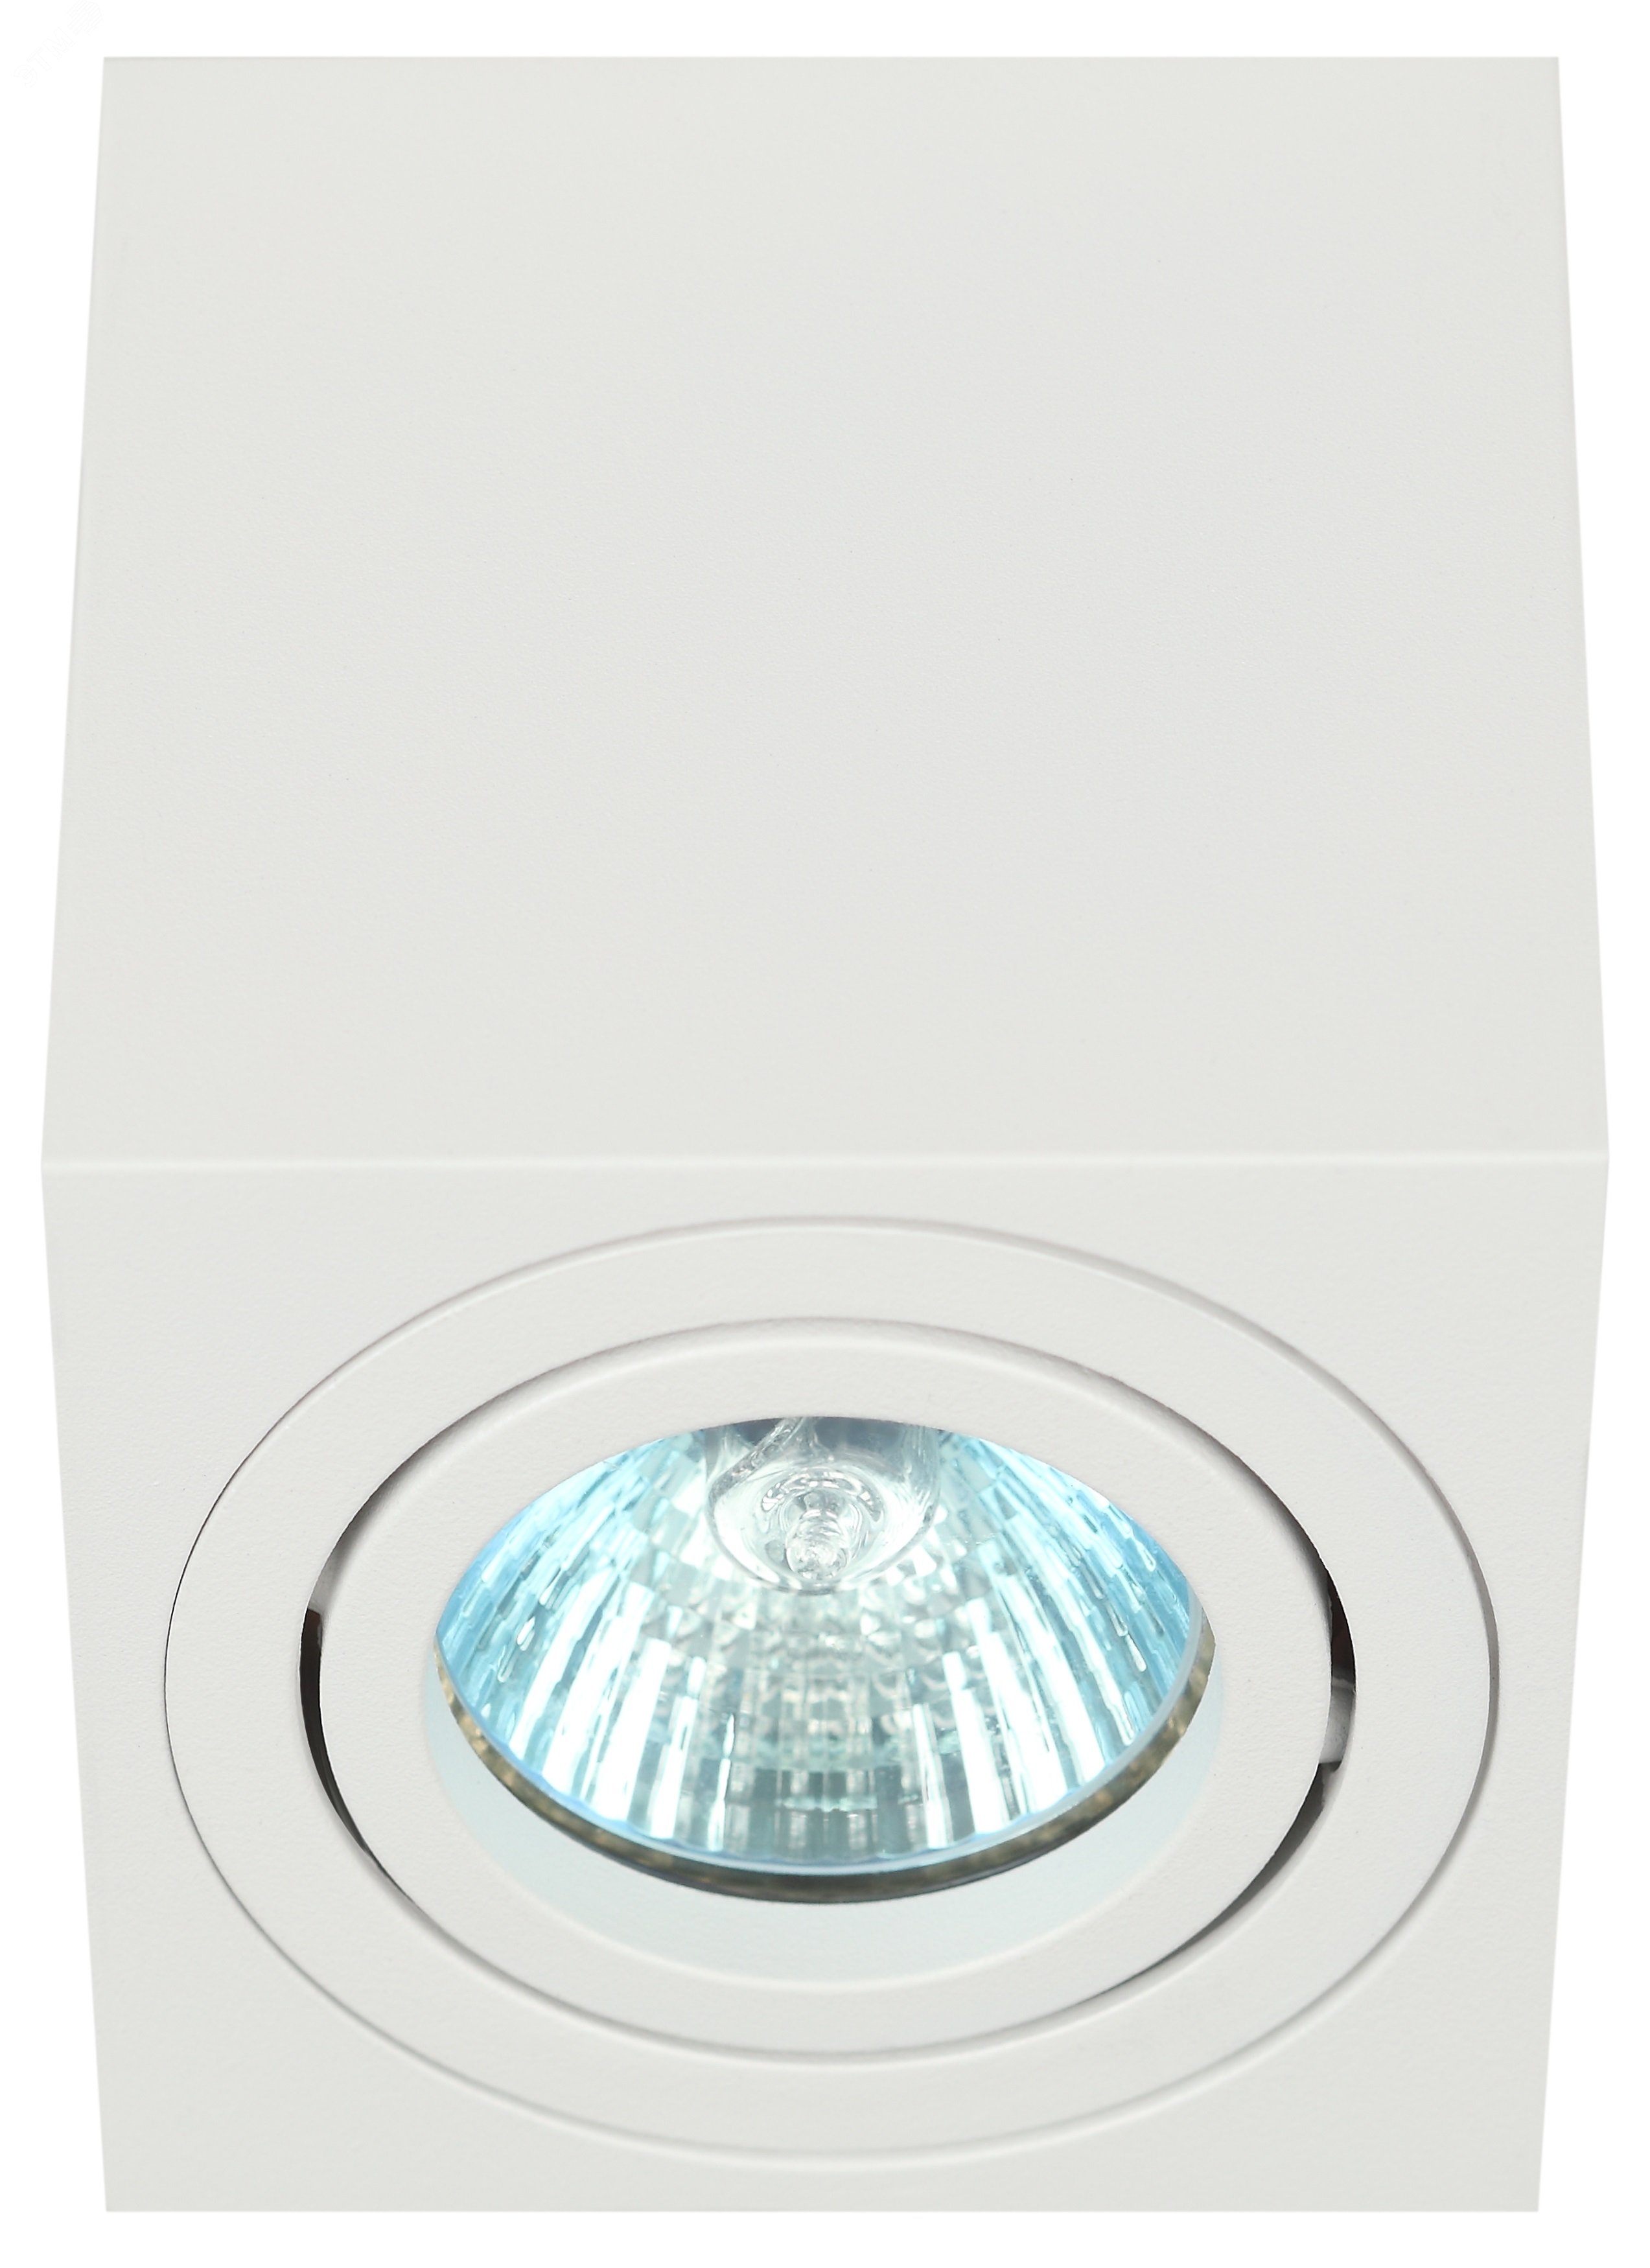 Светильник настенно-потолочный спот OL22 WH MR16/GU10, белый, поворотныйлампа MR16 ( в комплект не входит) Б0054394 ЭРА